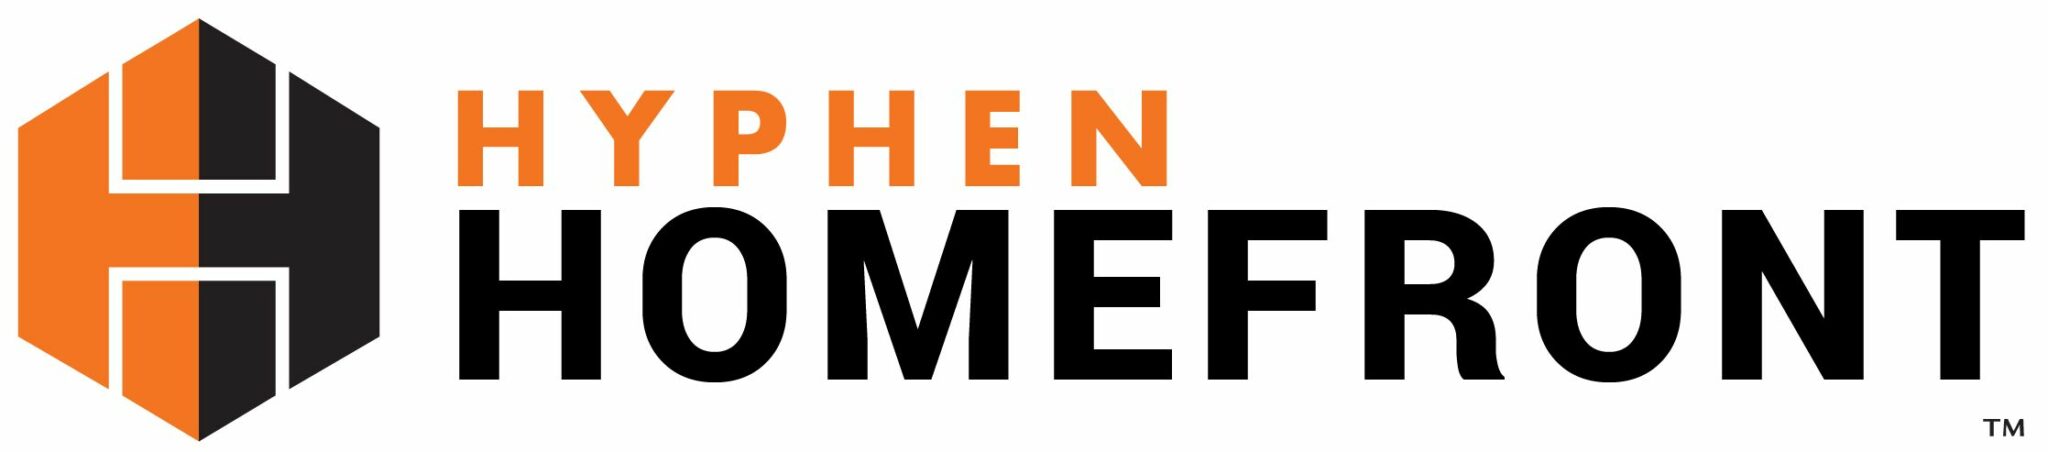 Hyphen Homefront Logo